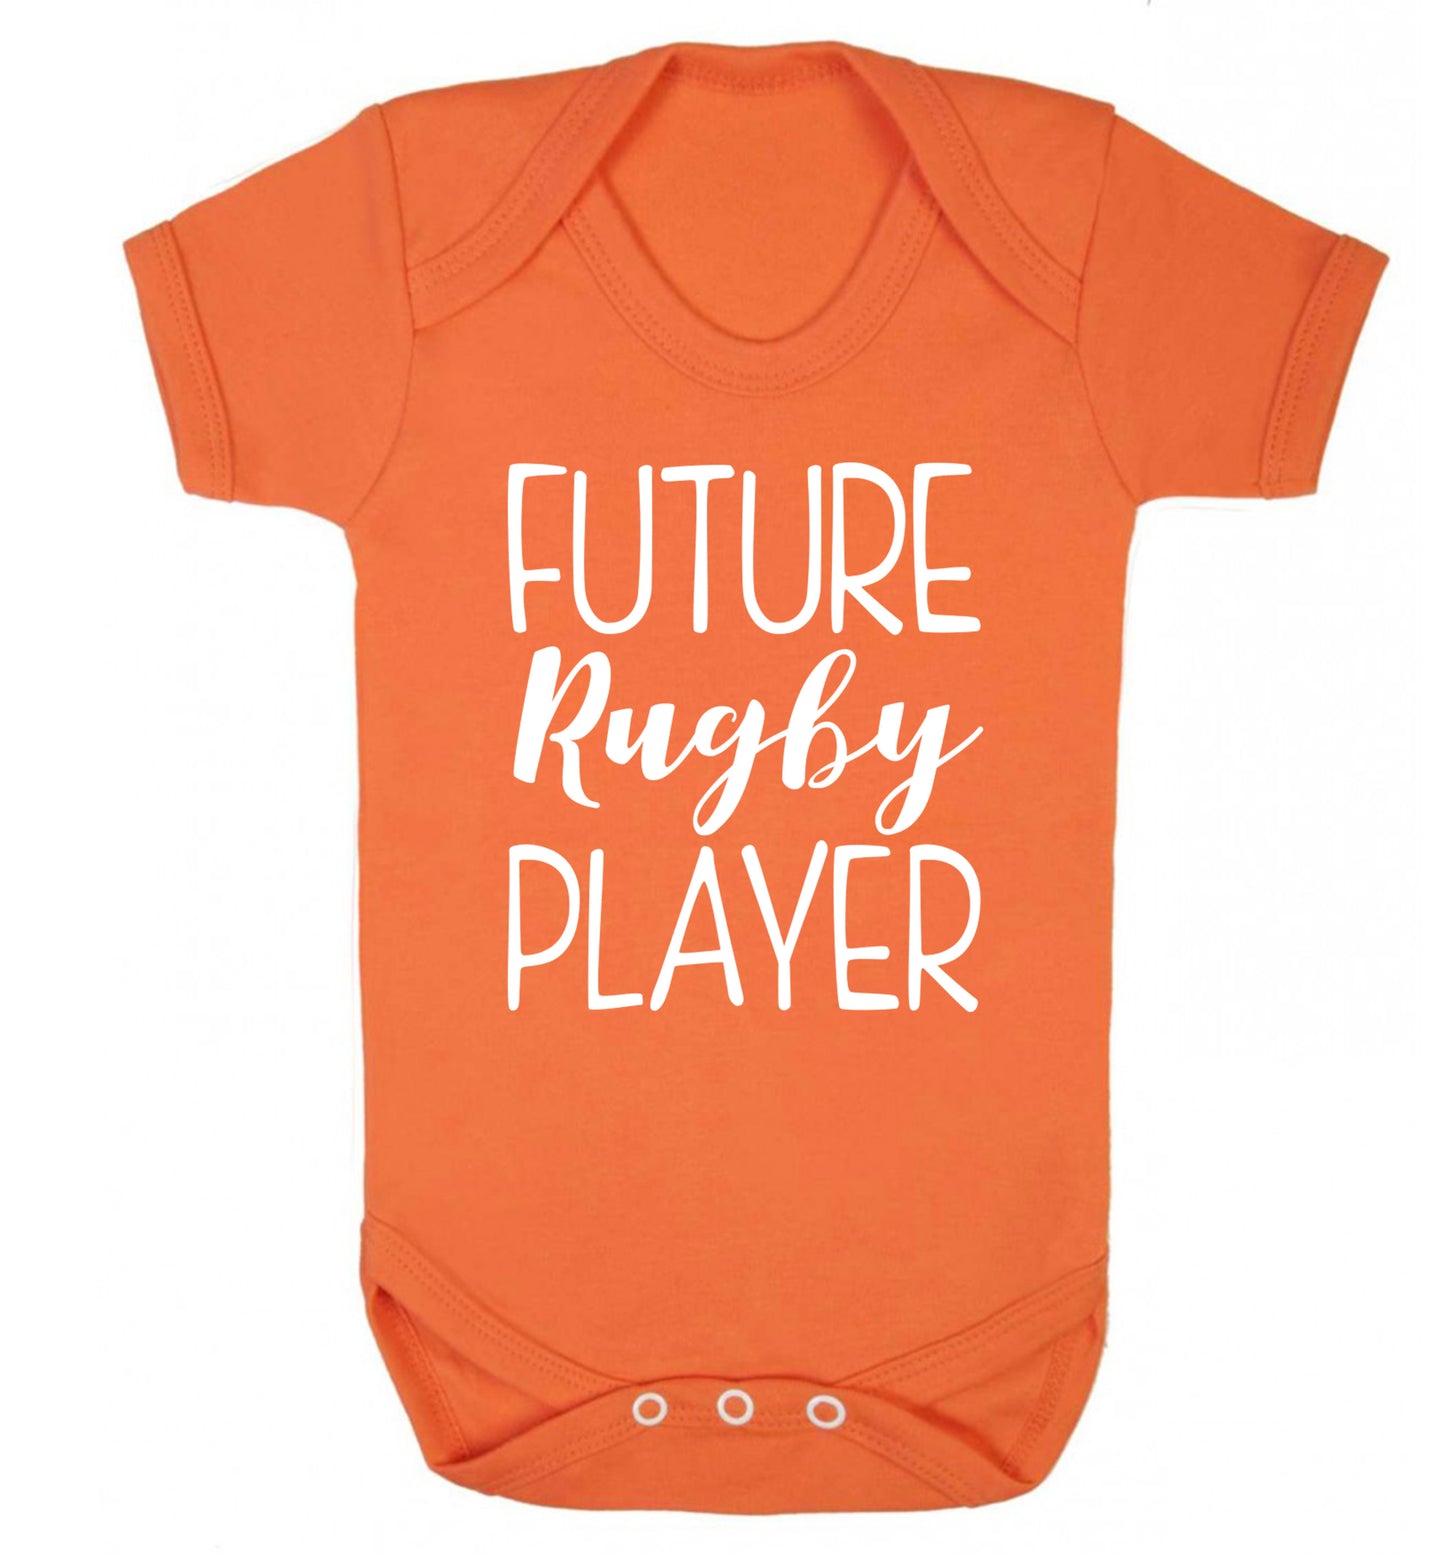 Future rugby player Baby Vest orange 18-24 months